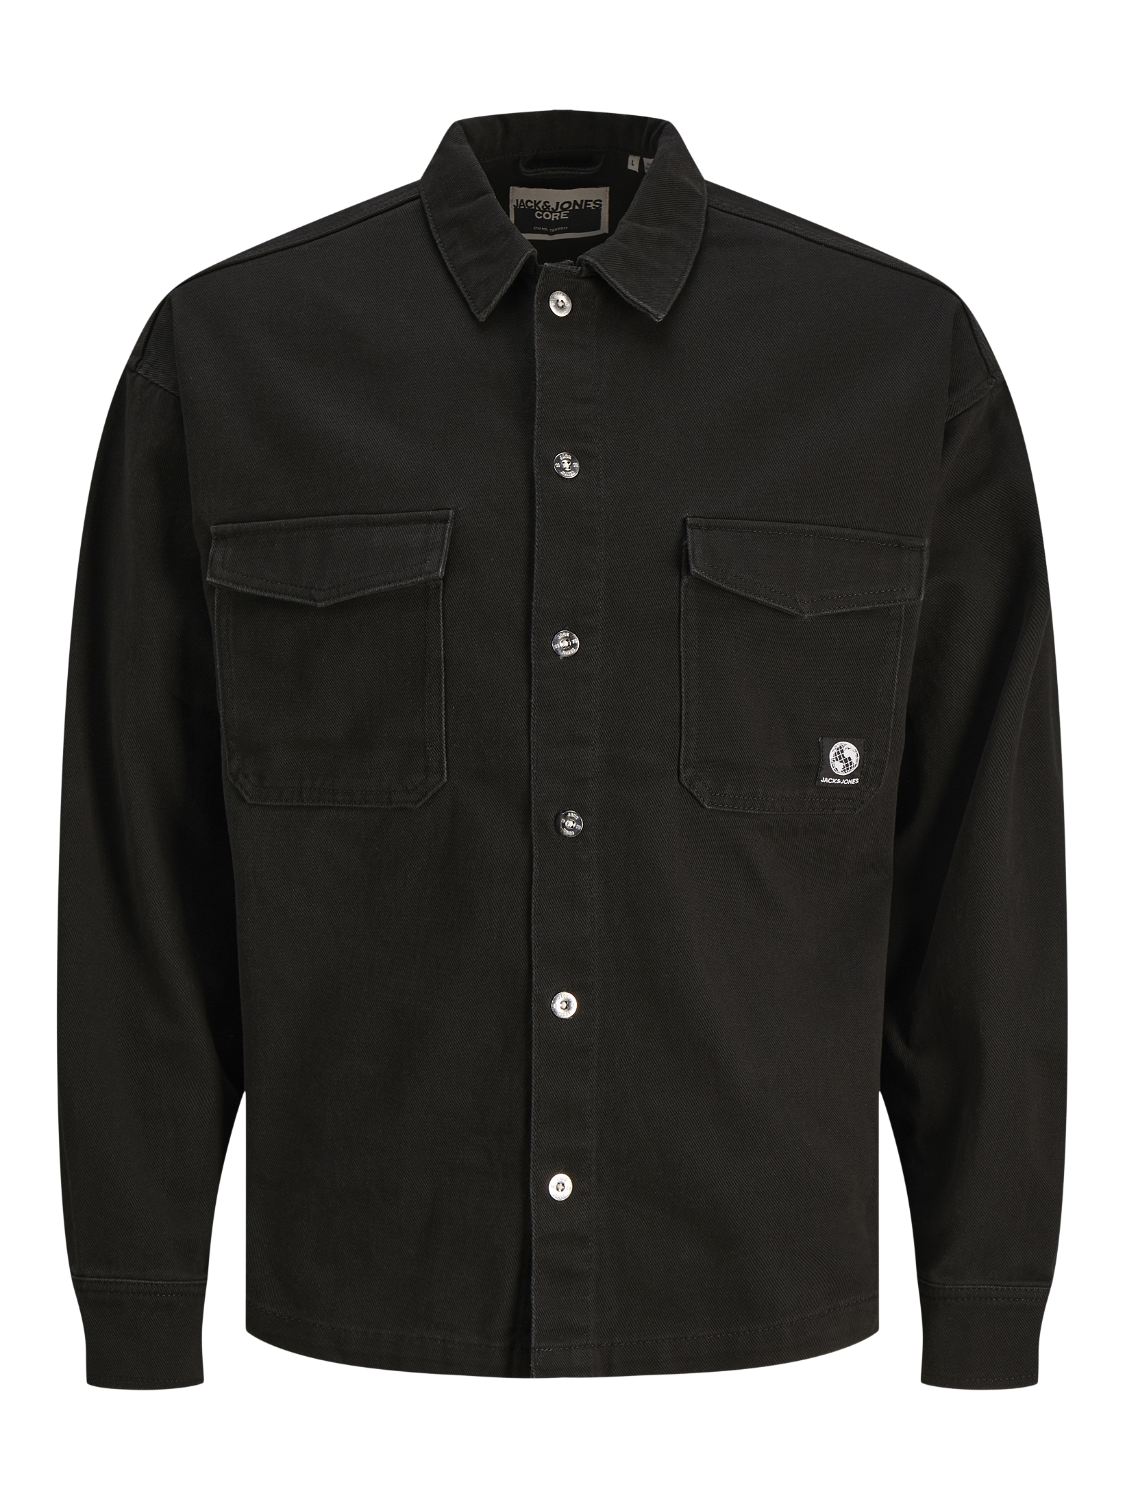 JCOTWILL Shirts - Black